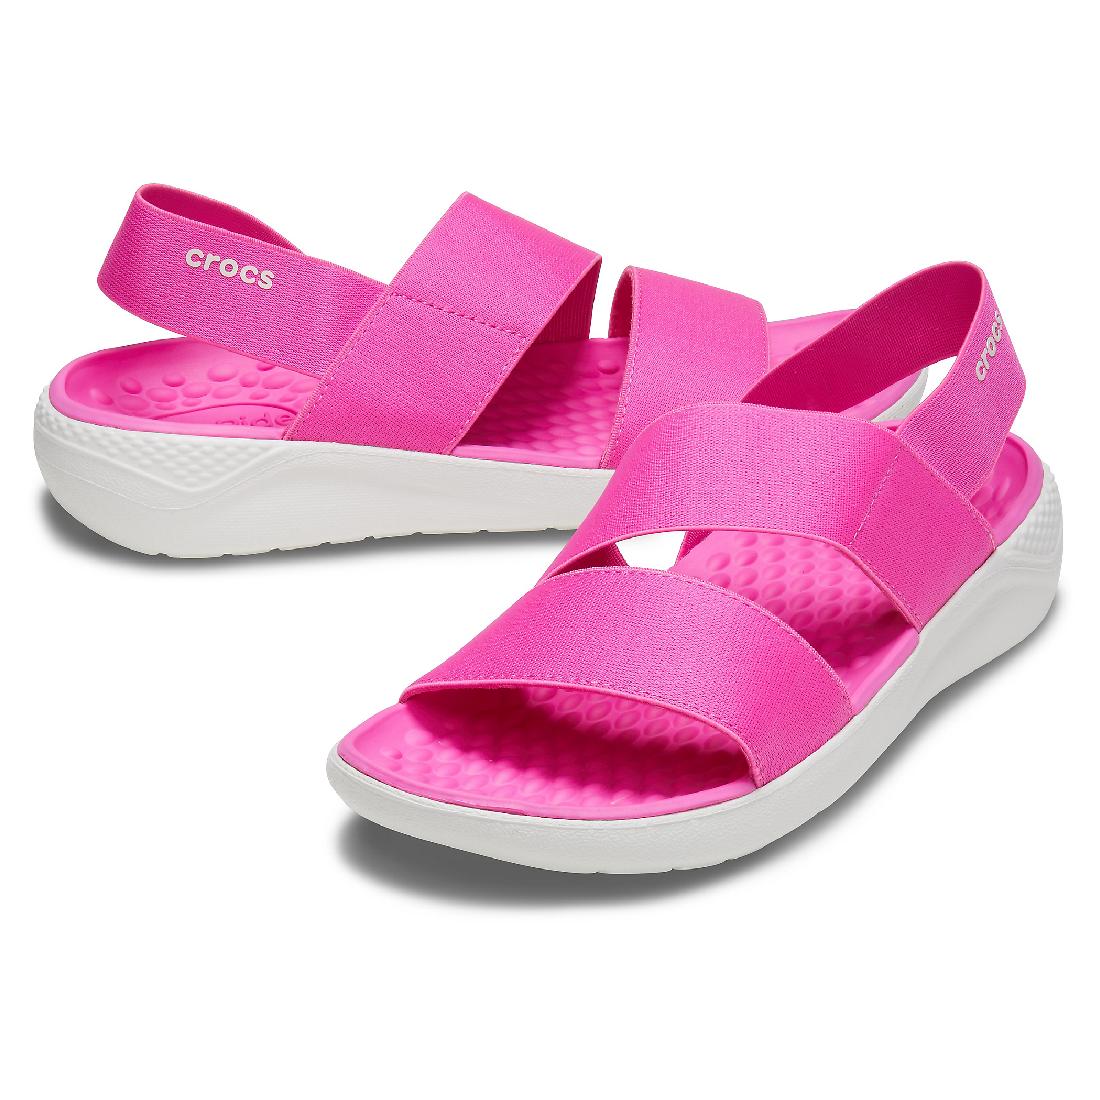 Crocs LiteRide Stretch Sandal W Damen Sandale Freizeitschuh 206081 Pink